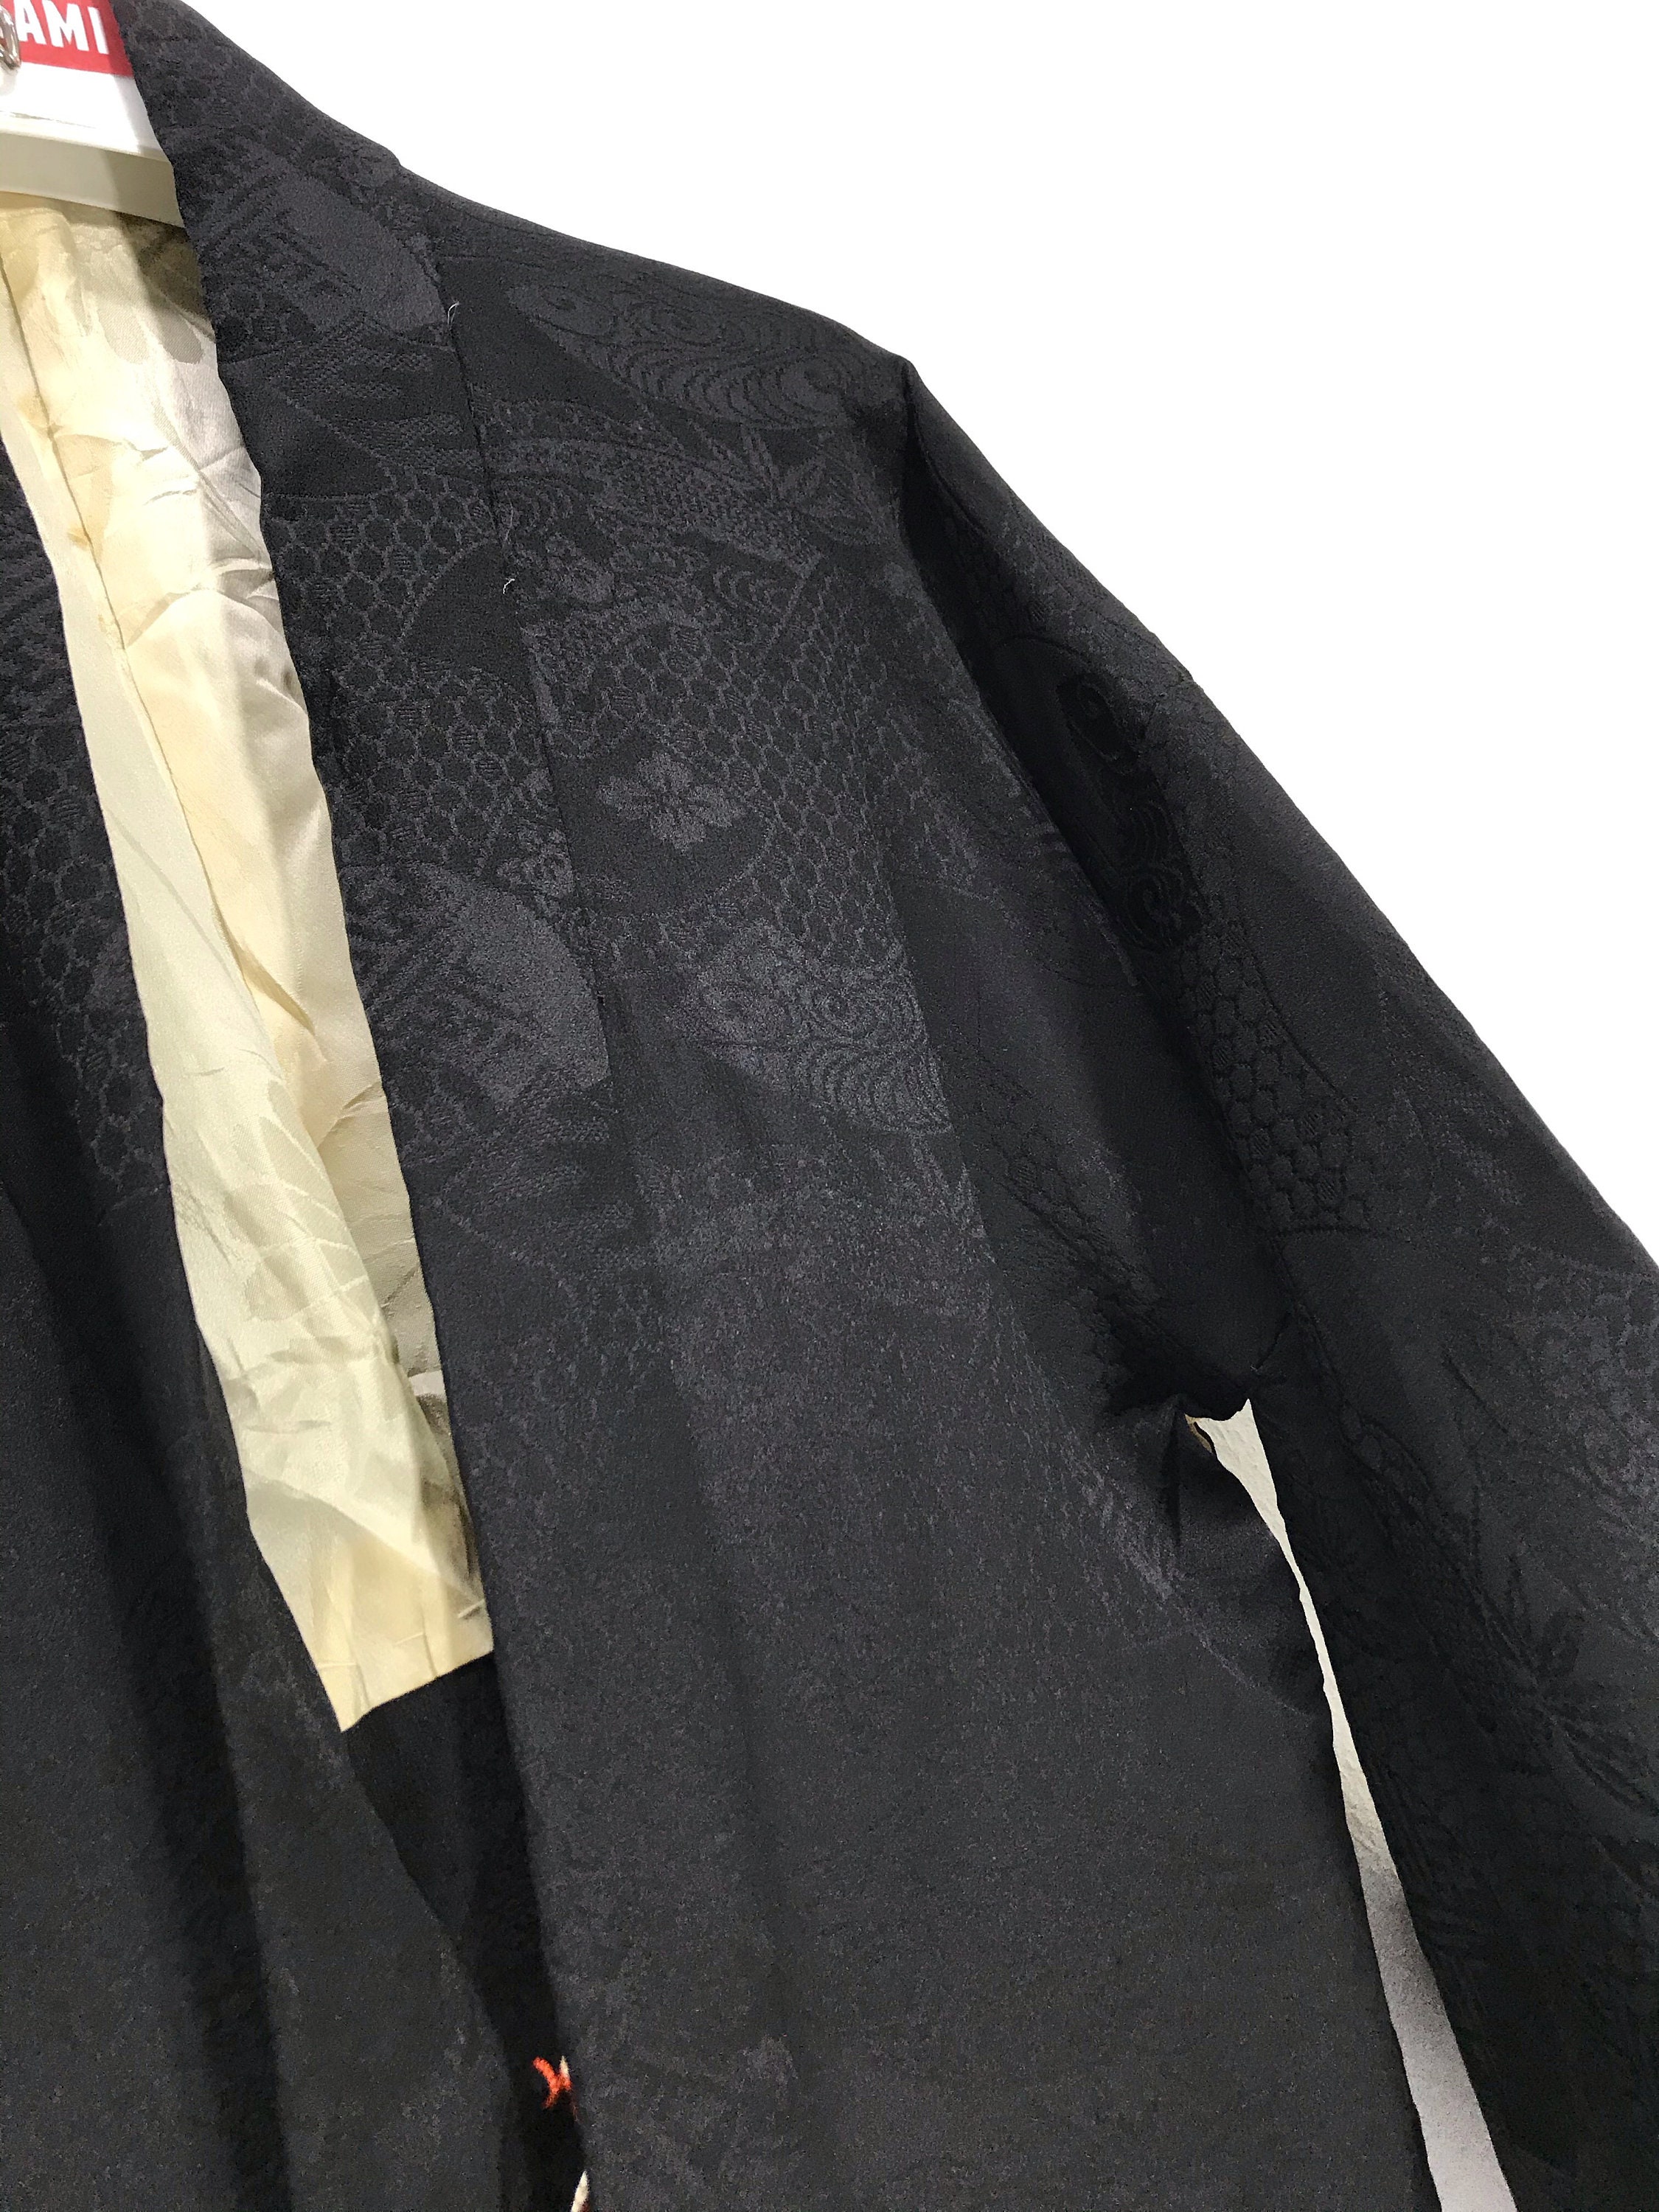 Made in Japan Vintage Haori Silk Kimono Black Brocade Florals | Etsy